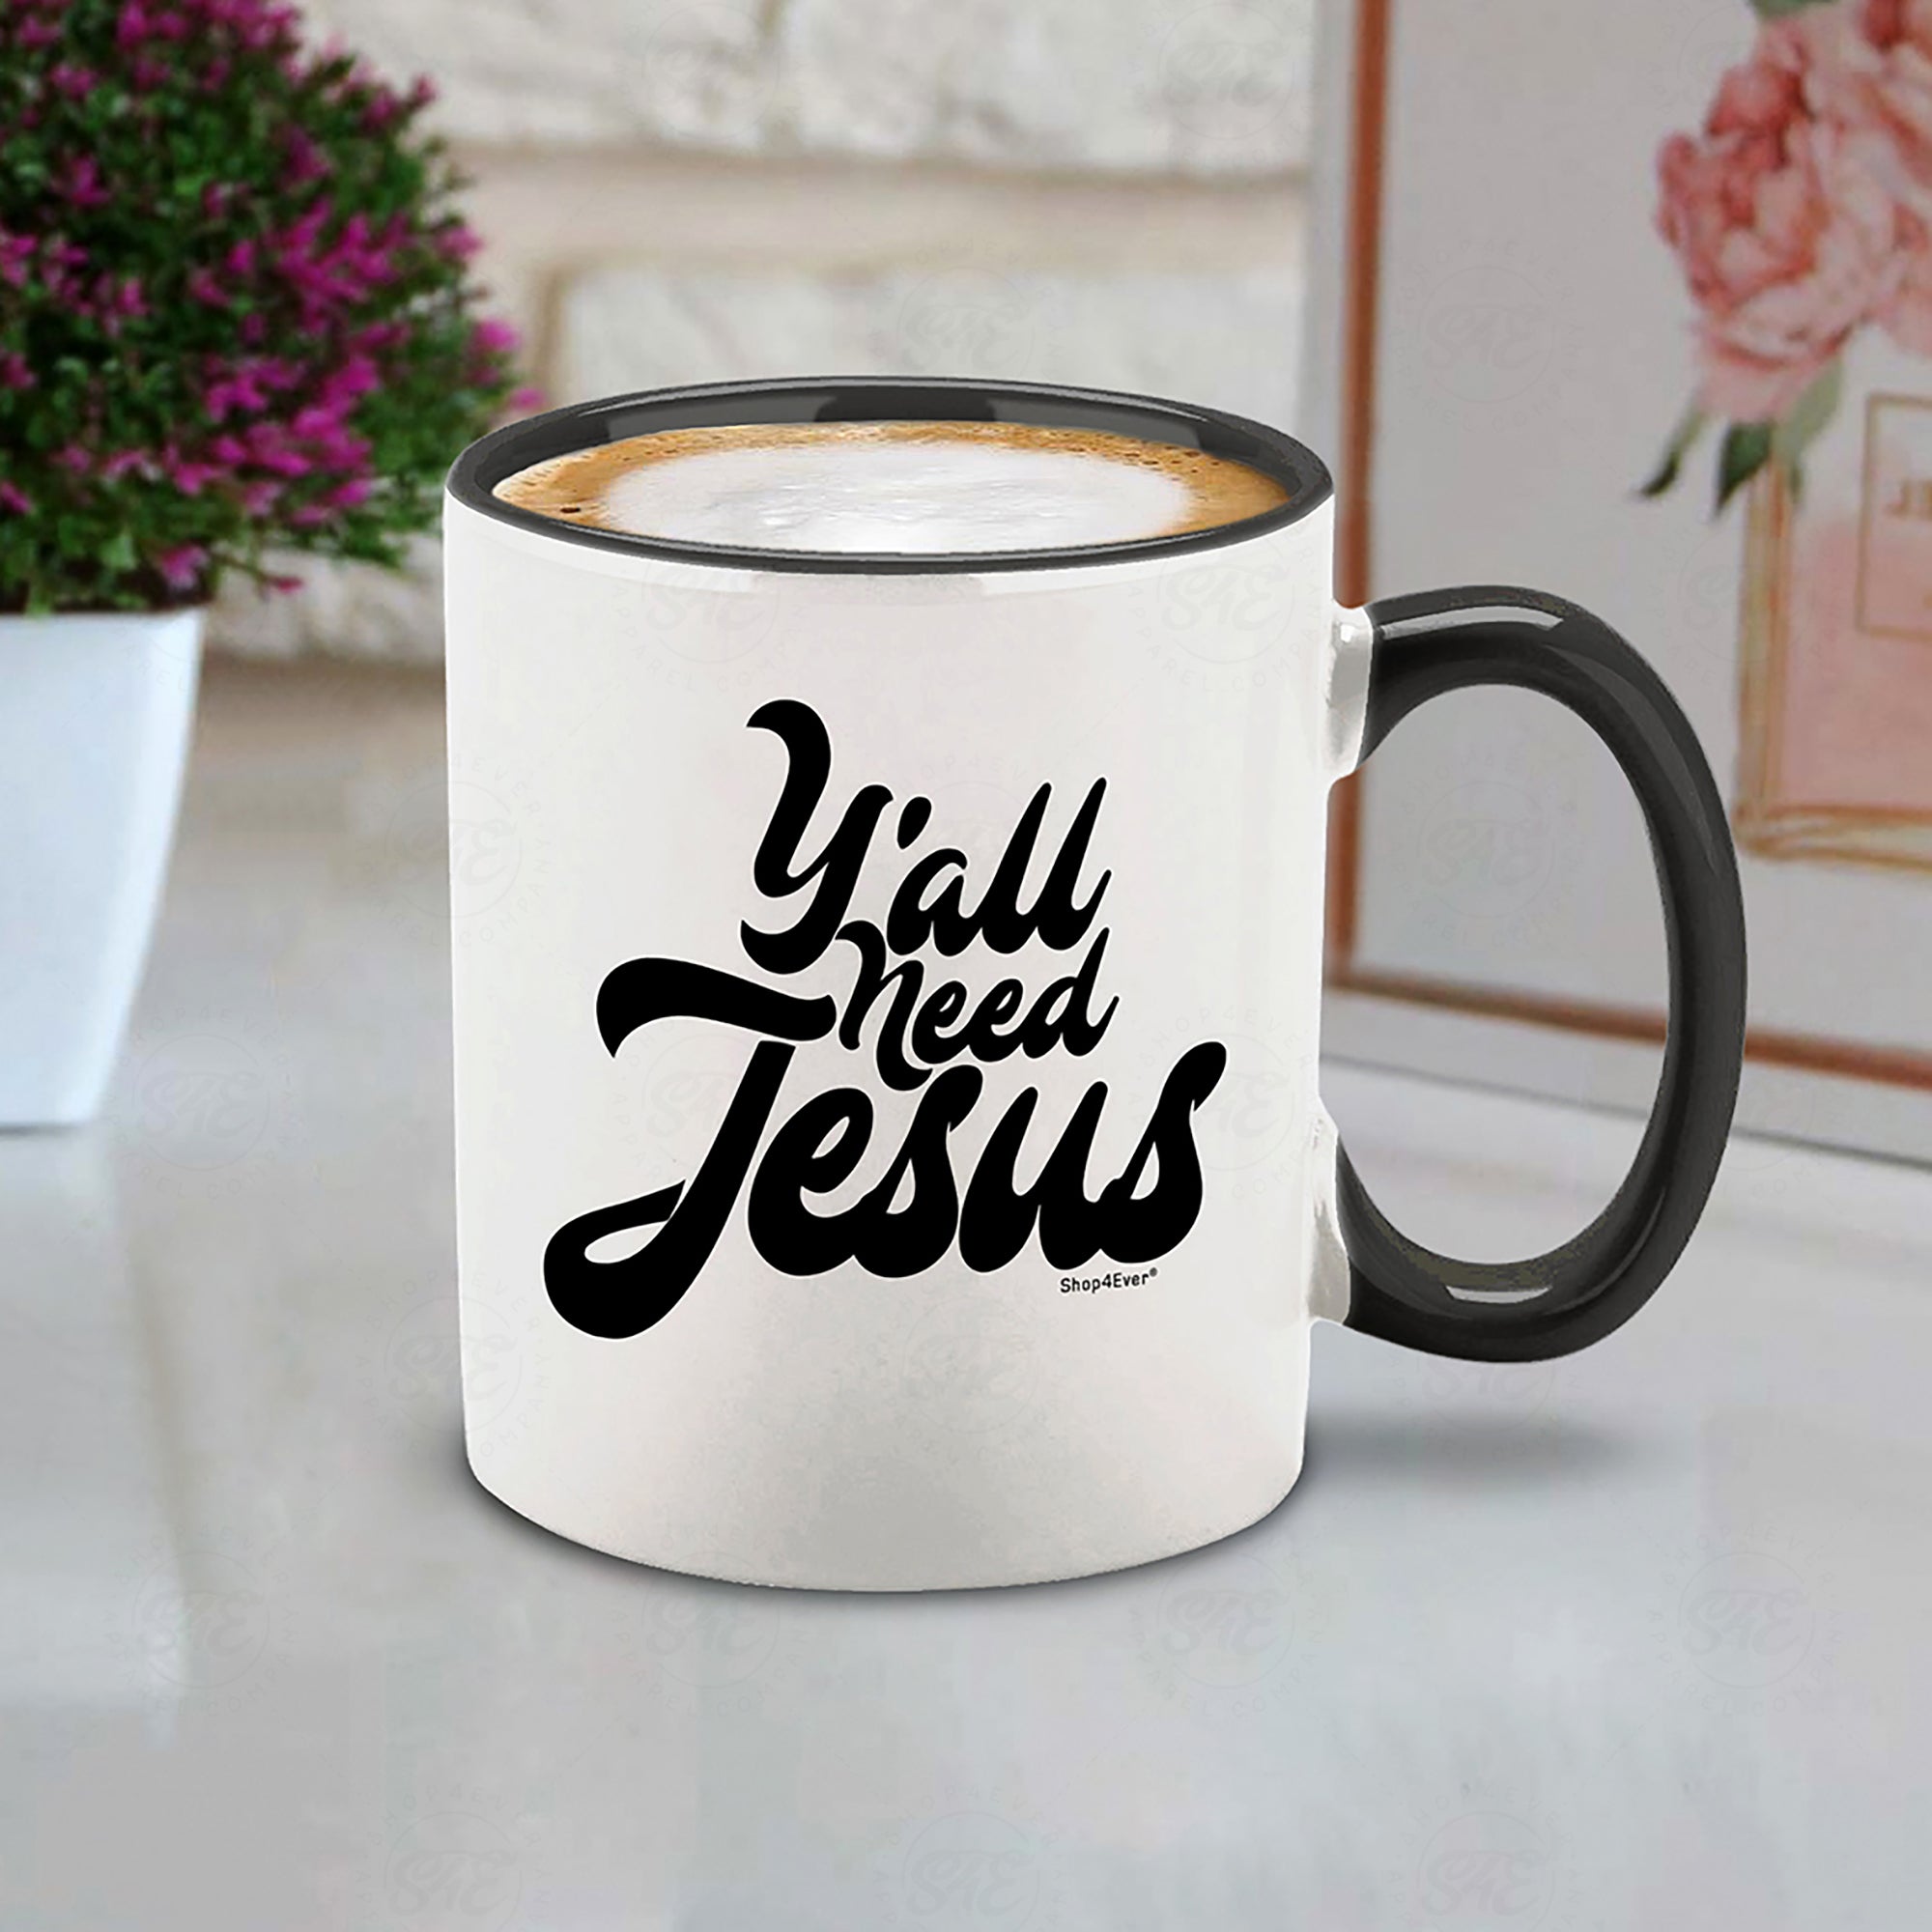 Ya'll Need Jesus Black Handle Ceramic Coffee Mug Tea Cup